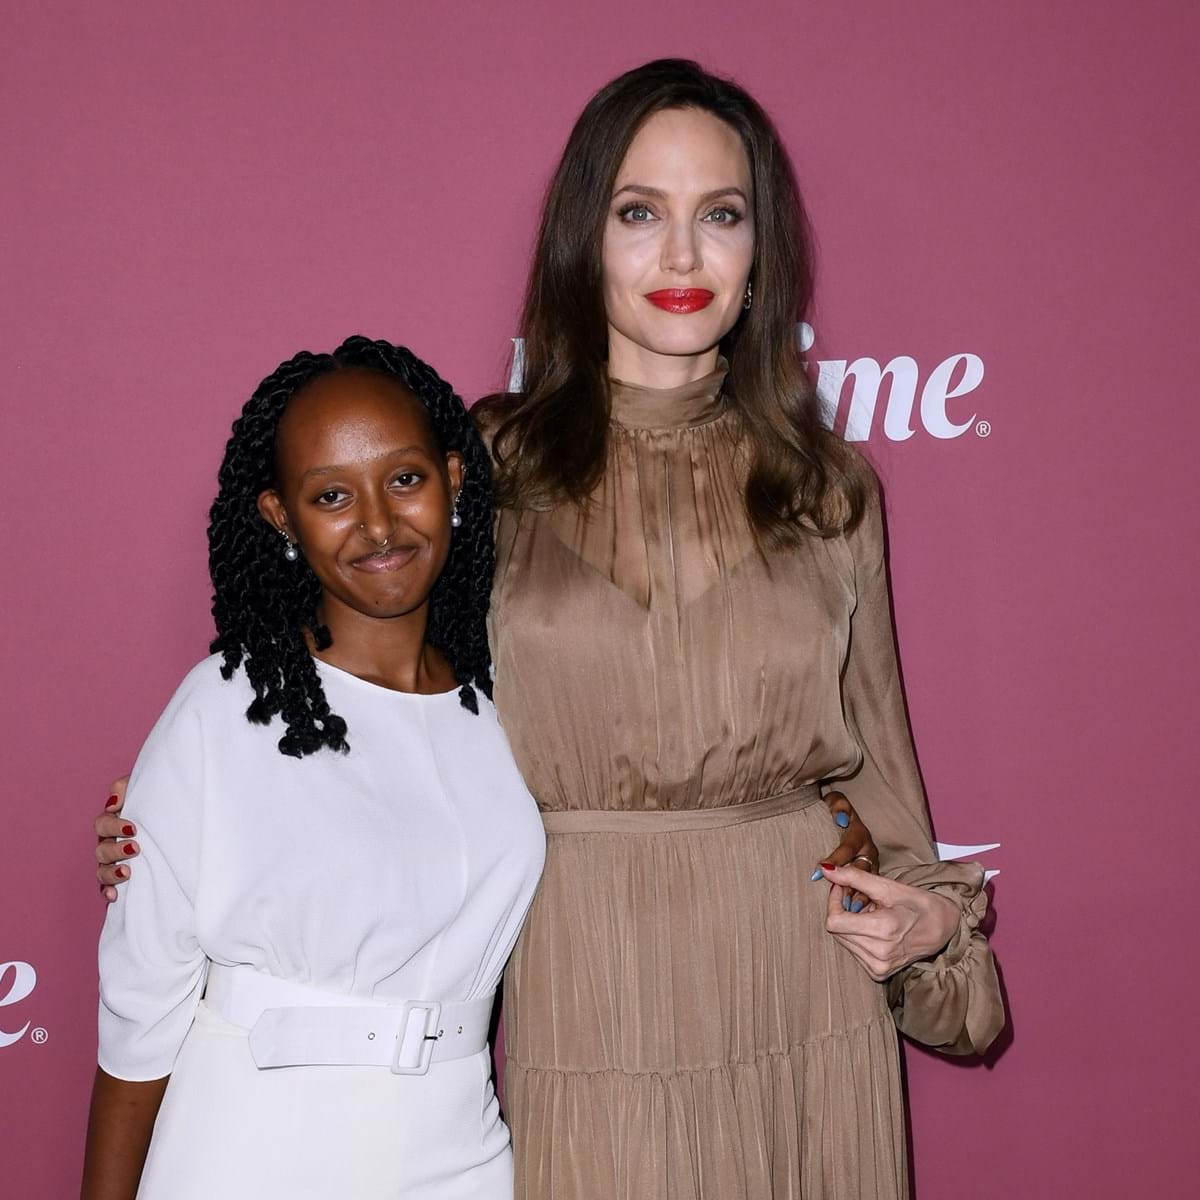 Angelina Jolie em fotografia rara com o filho mais velho